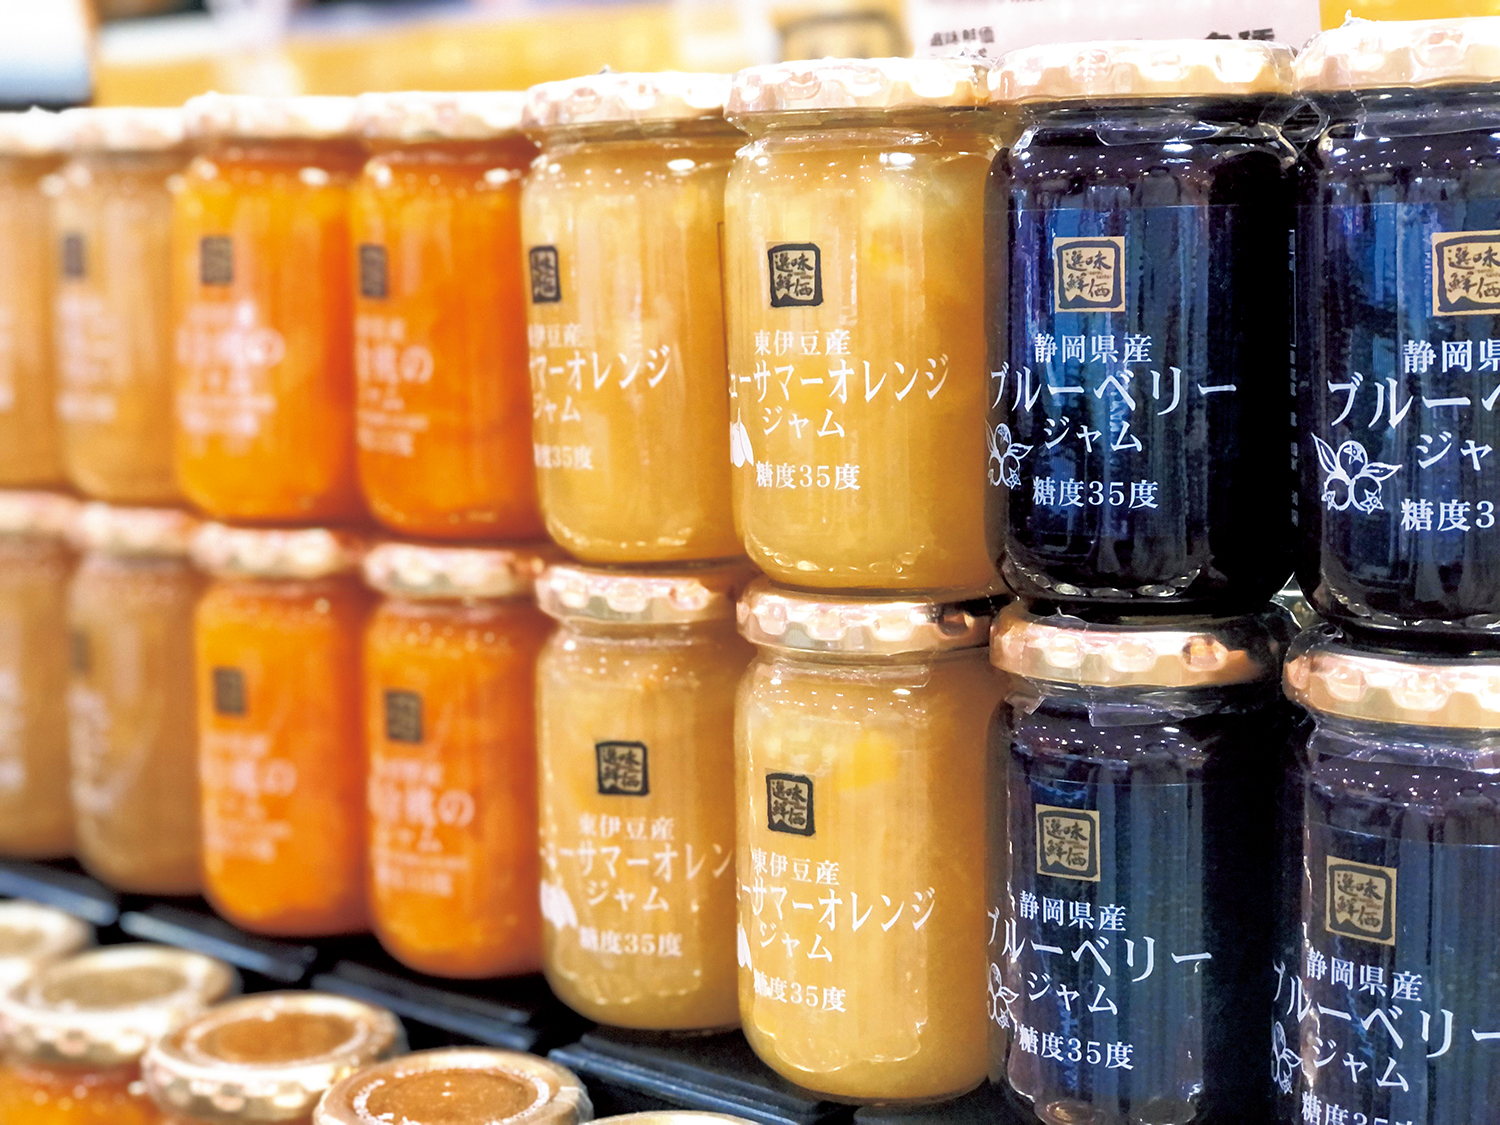 「選味鮮価 東伊豆産ニューサマーオレンジジャム」が涼やか。静岡産いちごやブルーベリーなど、地域の果実ジャムがそろう。